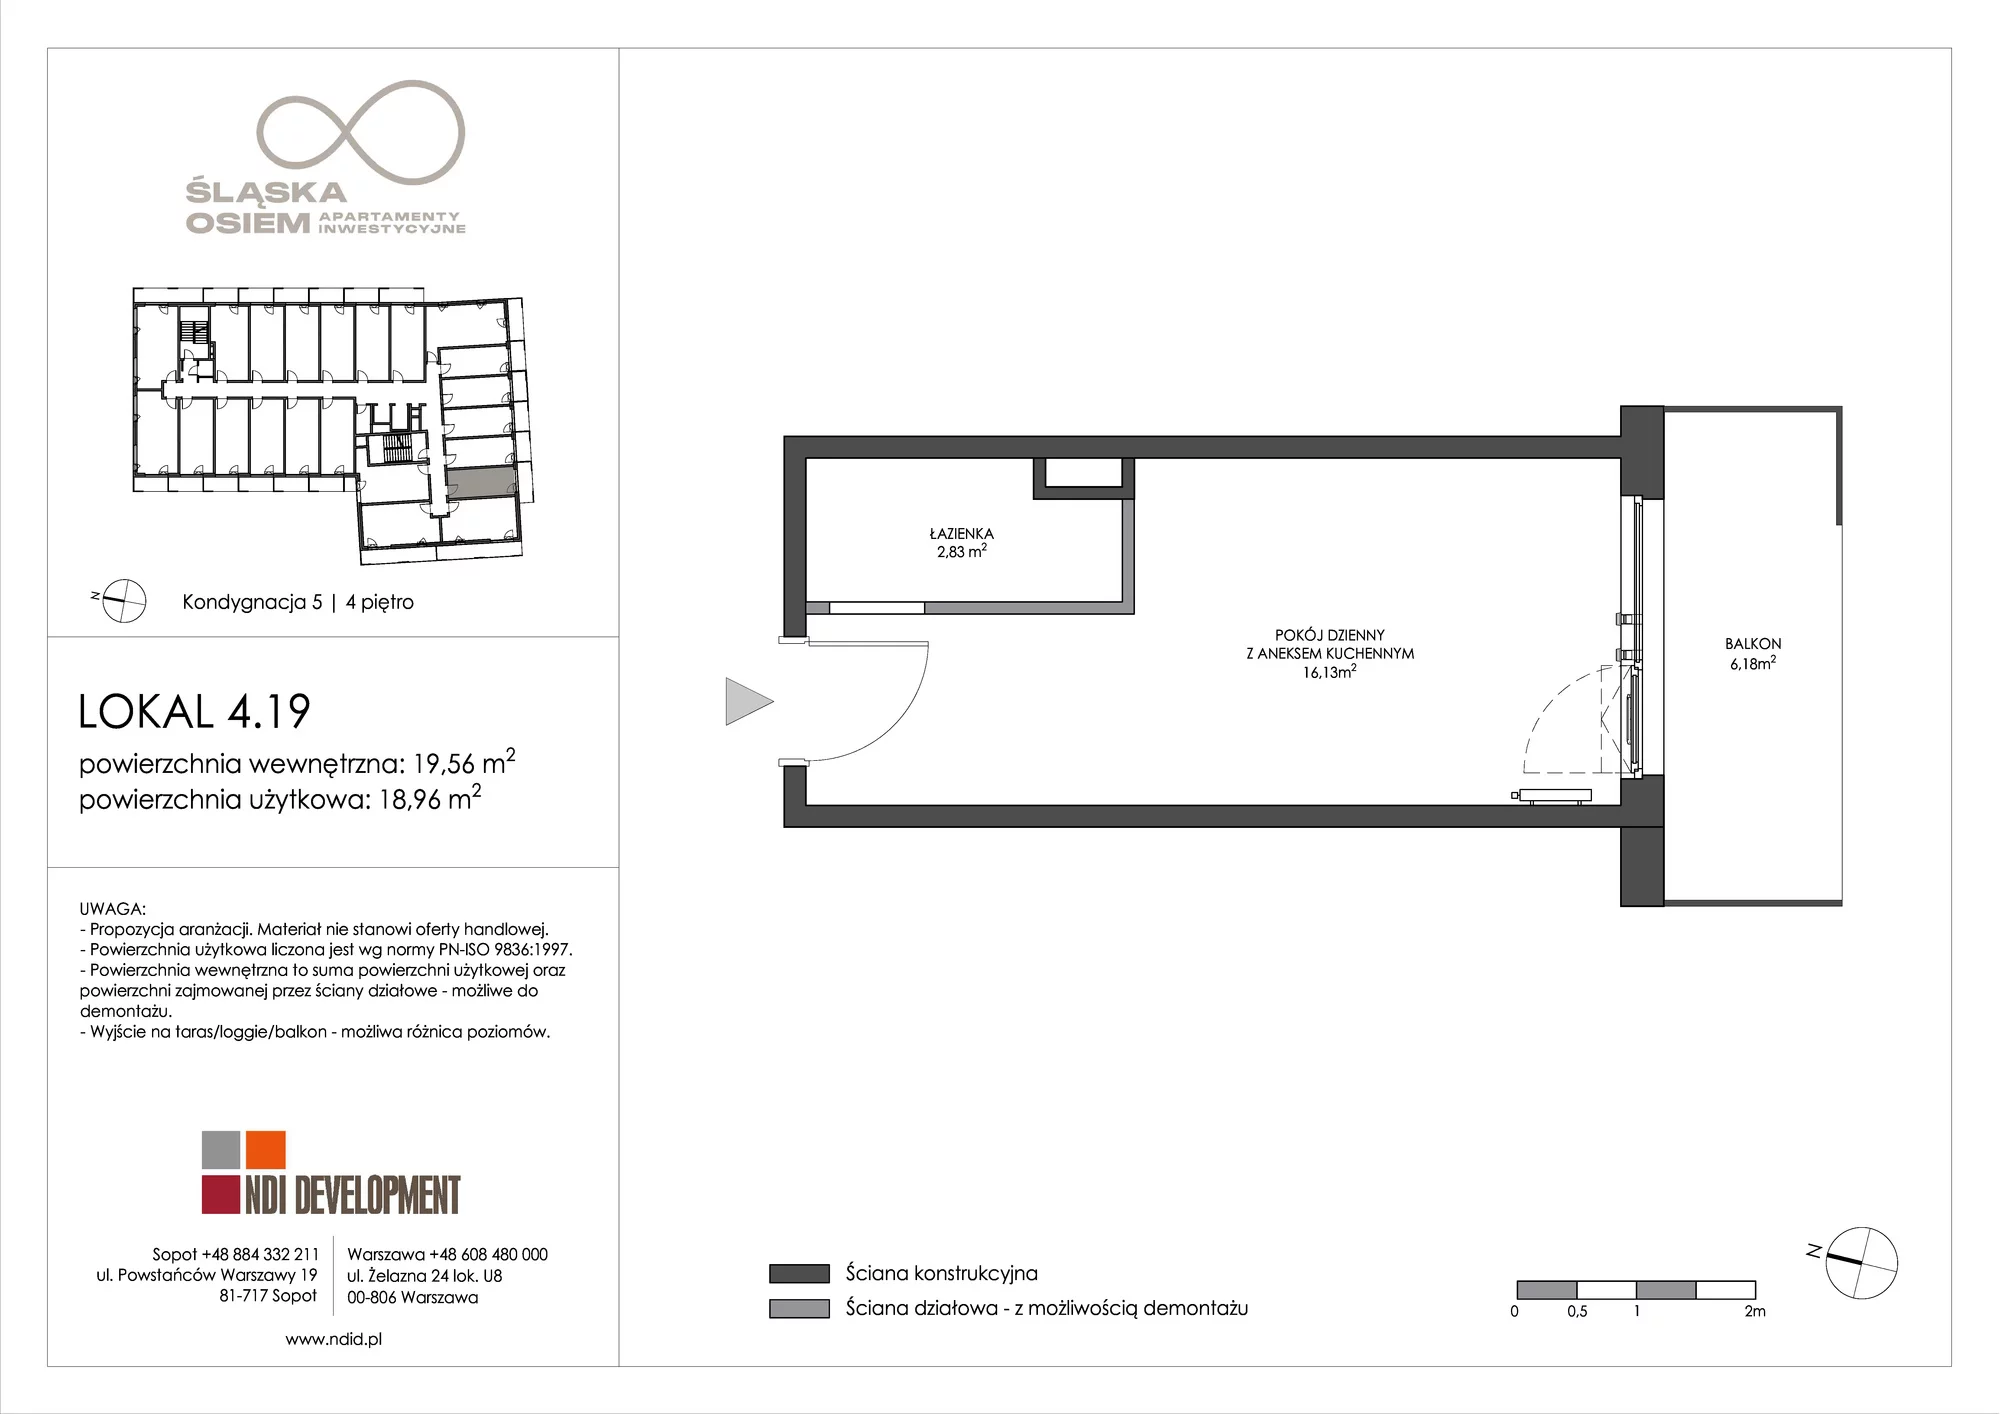 Apartament inwestycyjny 19,56 m², piętro 4, oferta nr 4.19, Śląska Osiem, Gdańsk, Przymorze, ul. Śląska 8